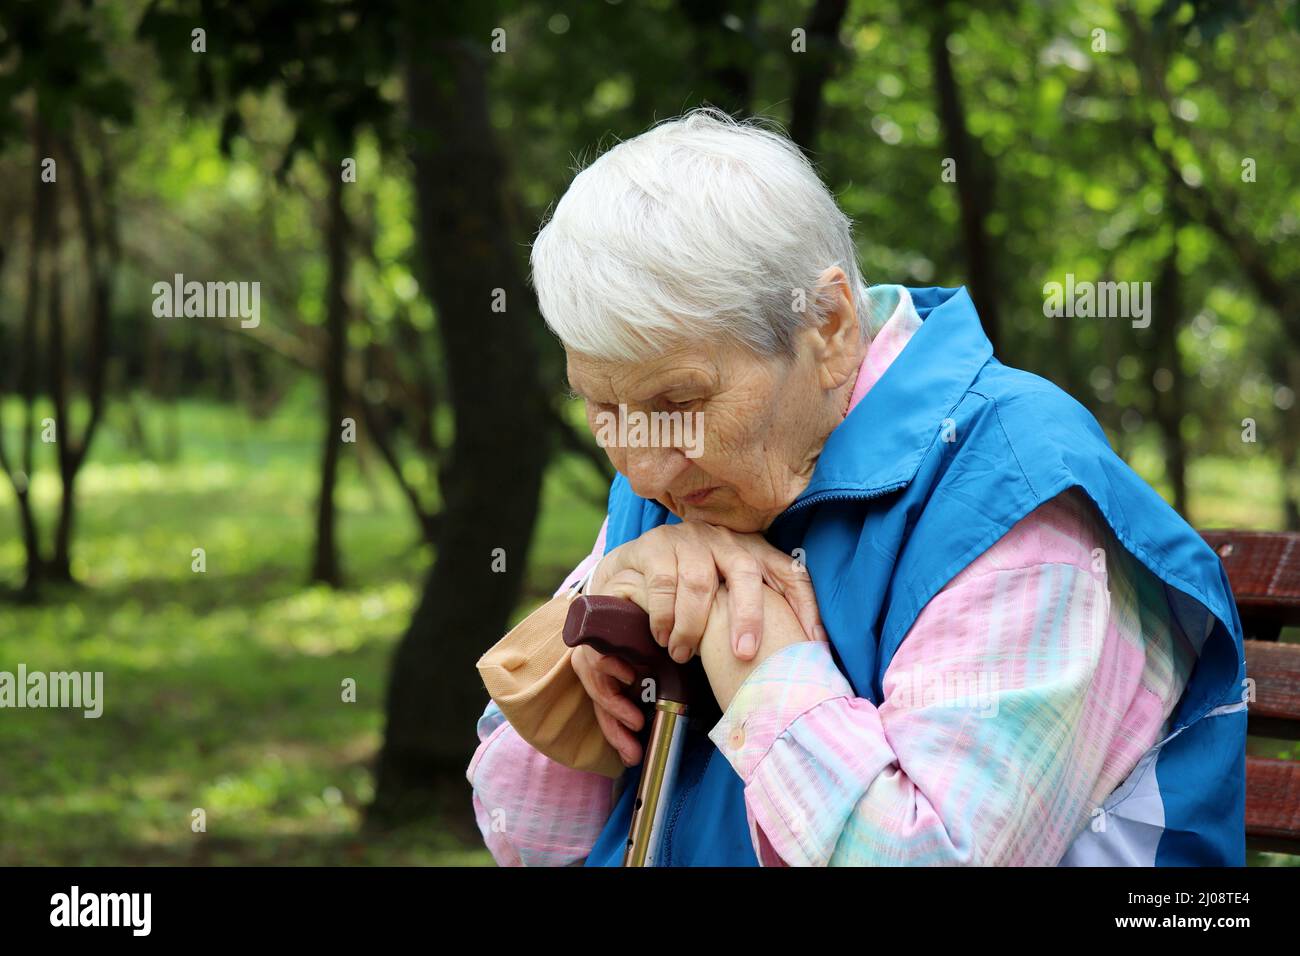 Porträt einer älteren grauhaarigen Frau, die mit Gehstöcken auf einer Bank in einem Park sitzt. Gesunde Lebensweise im Alter, Leben im Ruhestand Stockfoto